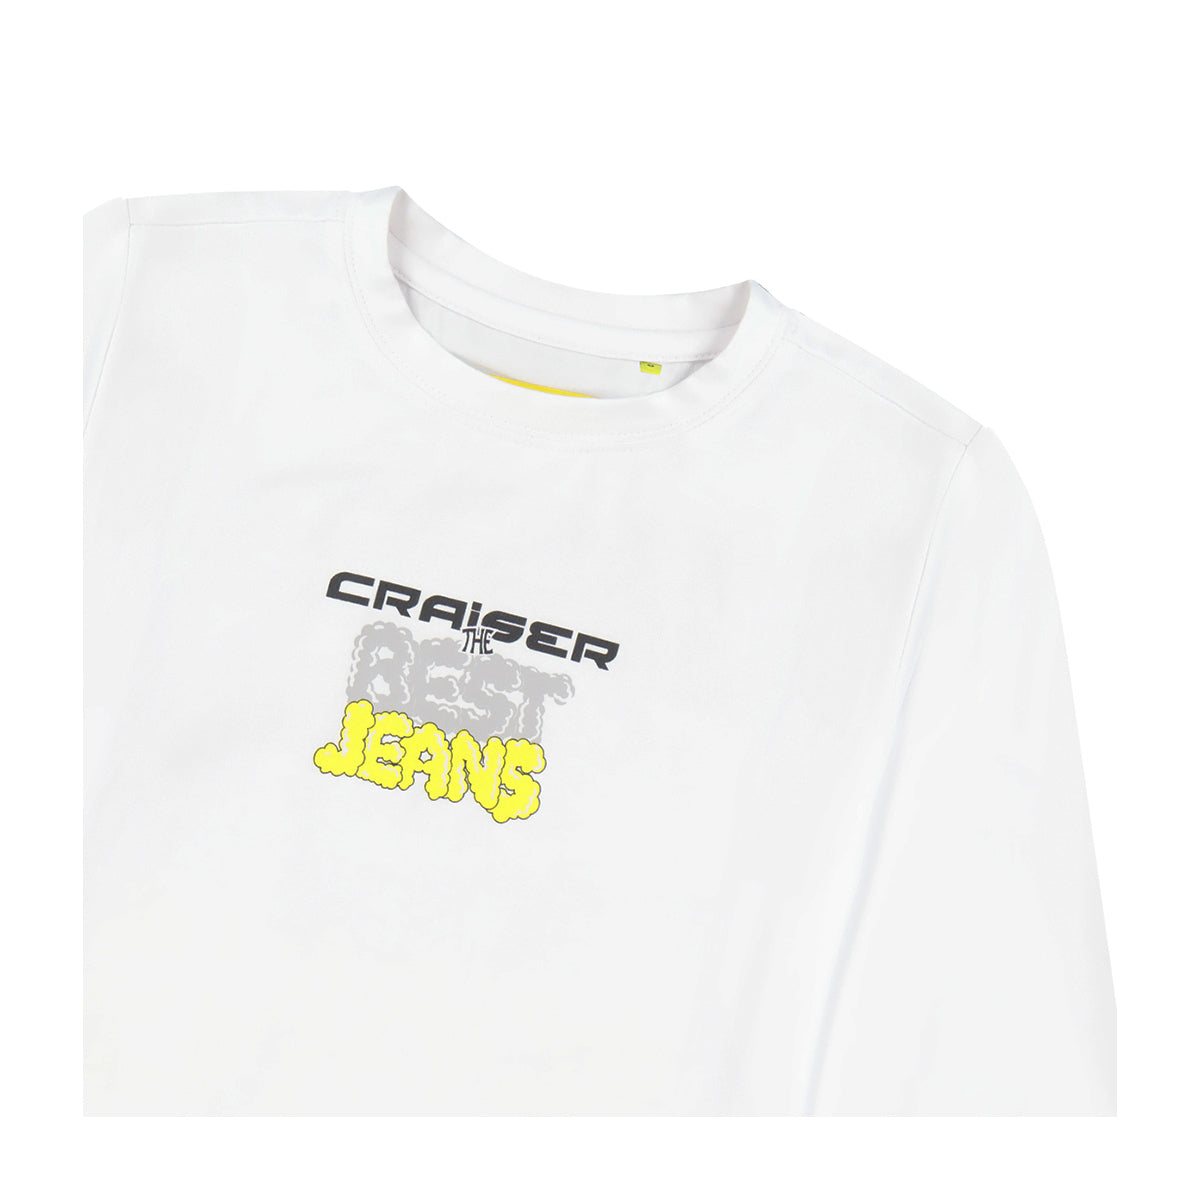 חולצת טי שרט CRAISER BEST JEANS ארוכה לילדים